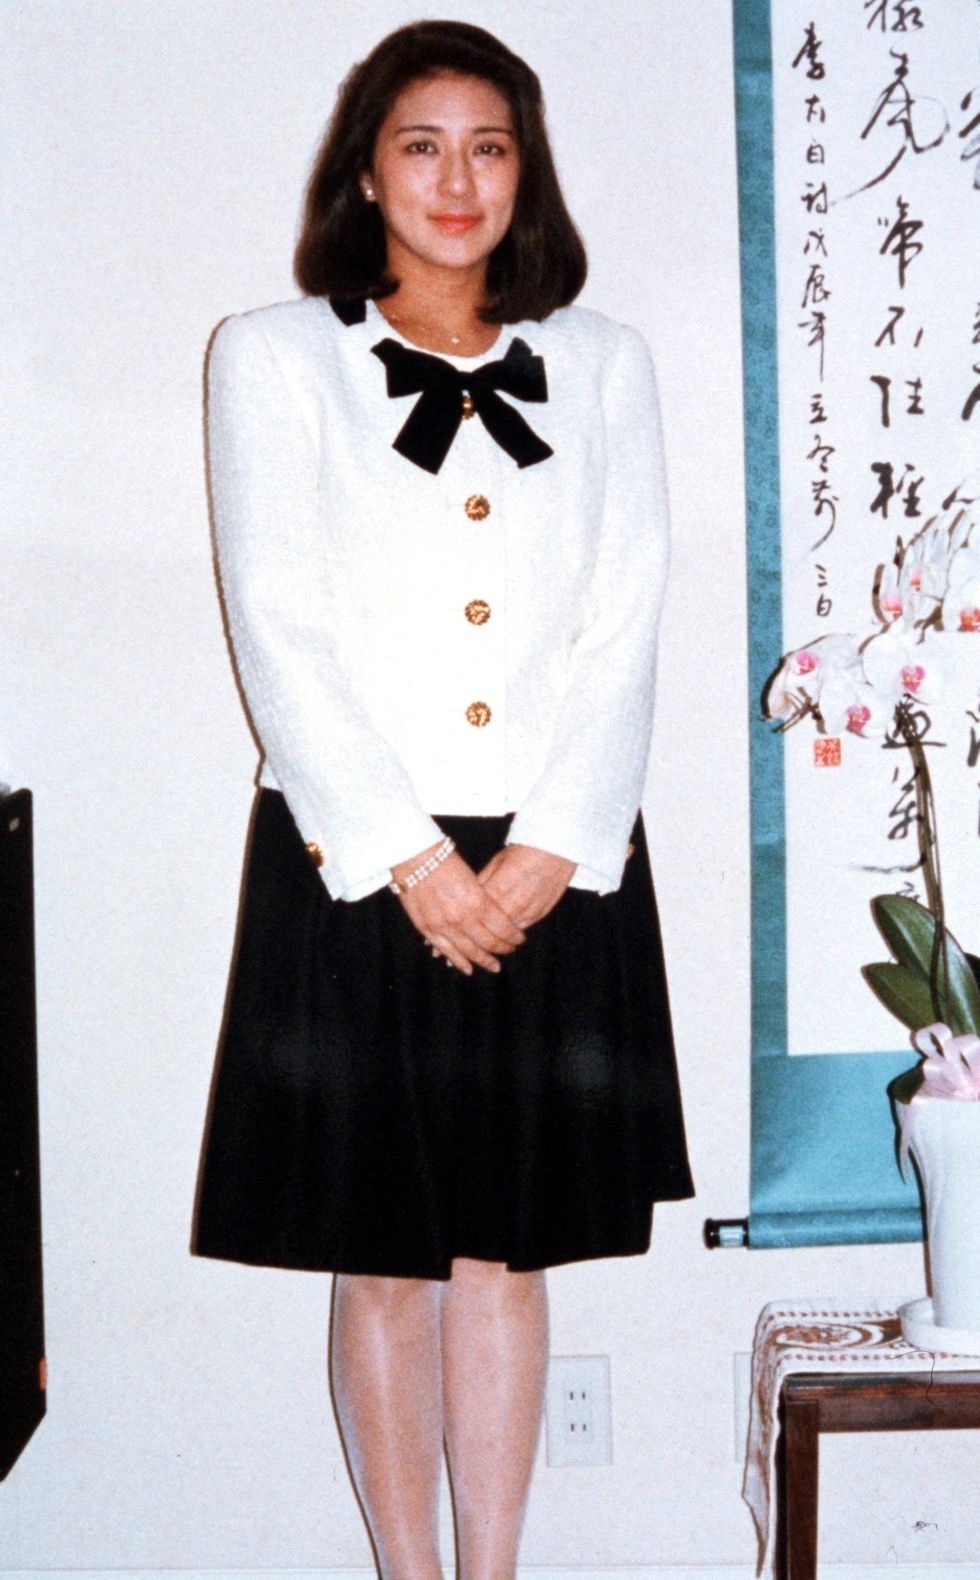 日本皇室雅子皇后高學歷精通英語棄外交官 因身高被厭嫁德仁親王 Girlstyle 女生日常